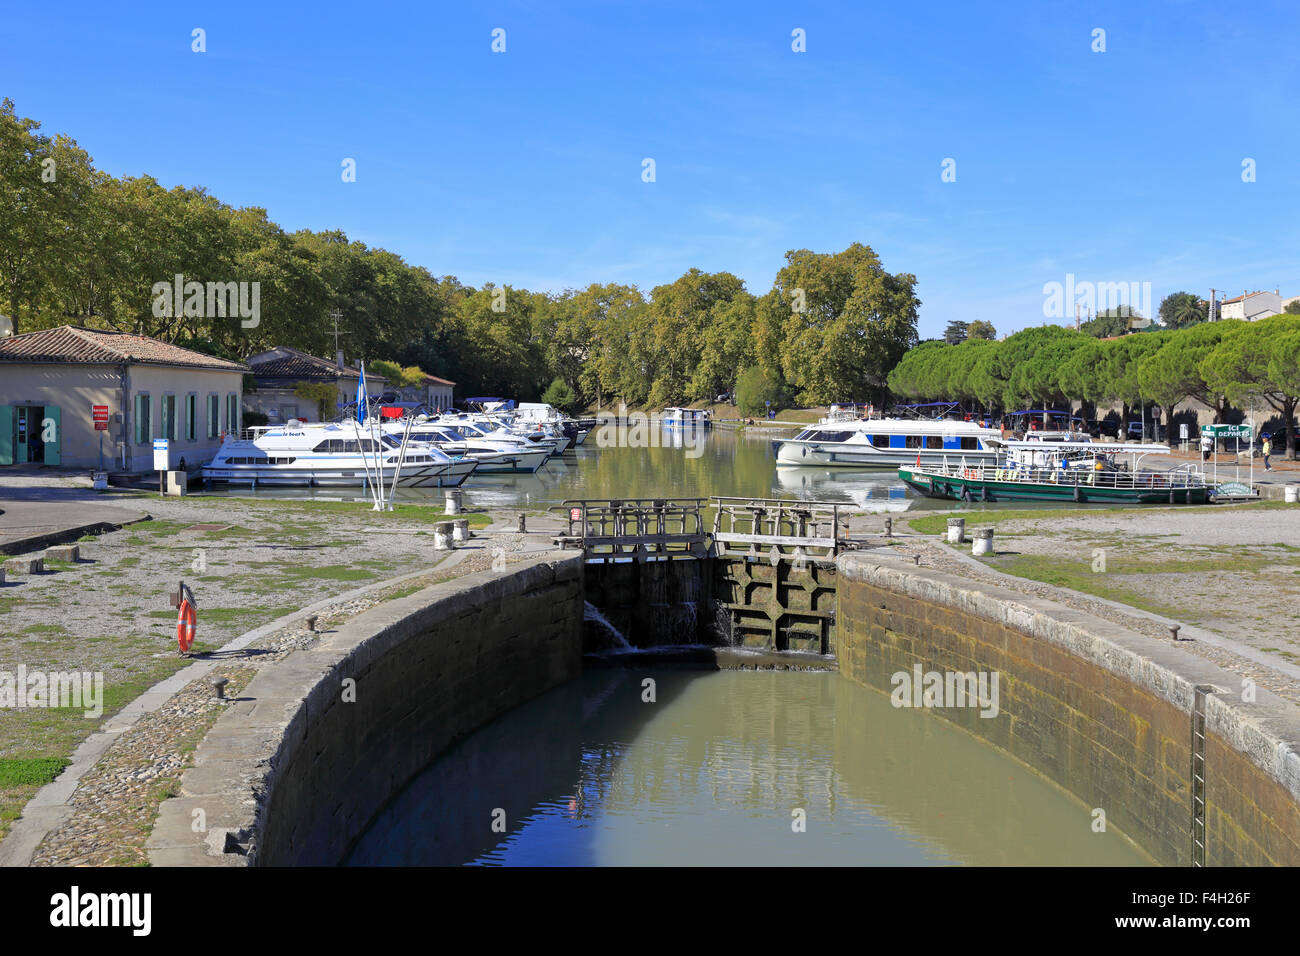 Bateaux au Port de Carcassonne sur le Canal du Midi, Aude, Languedoc Roussillon, France. Banque D'Images